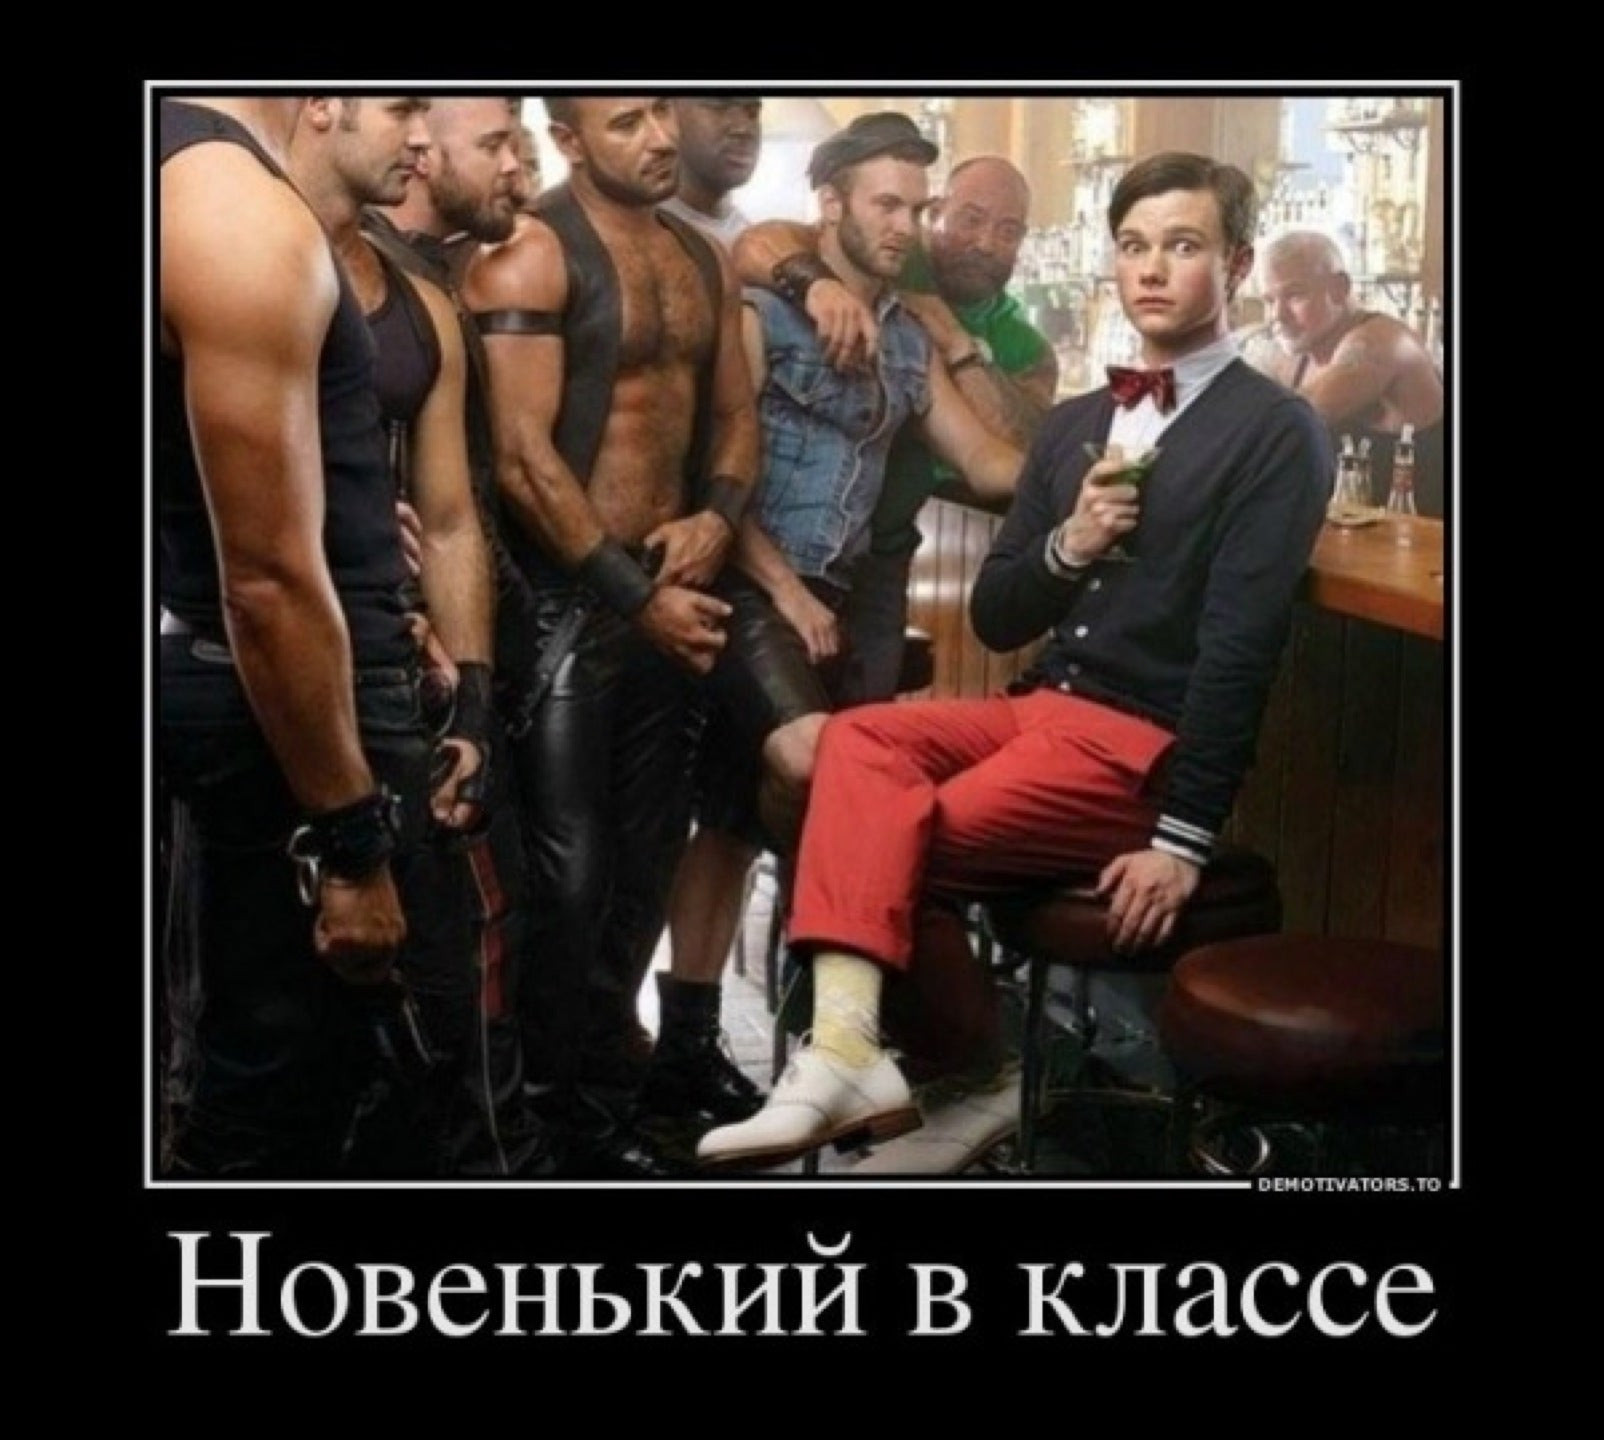 русская песня про геев фото 34